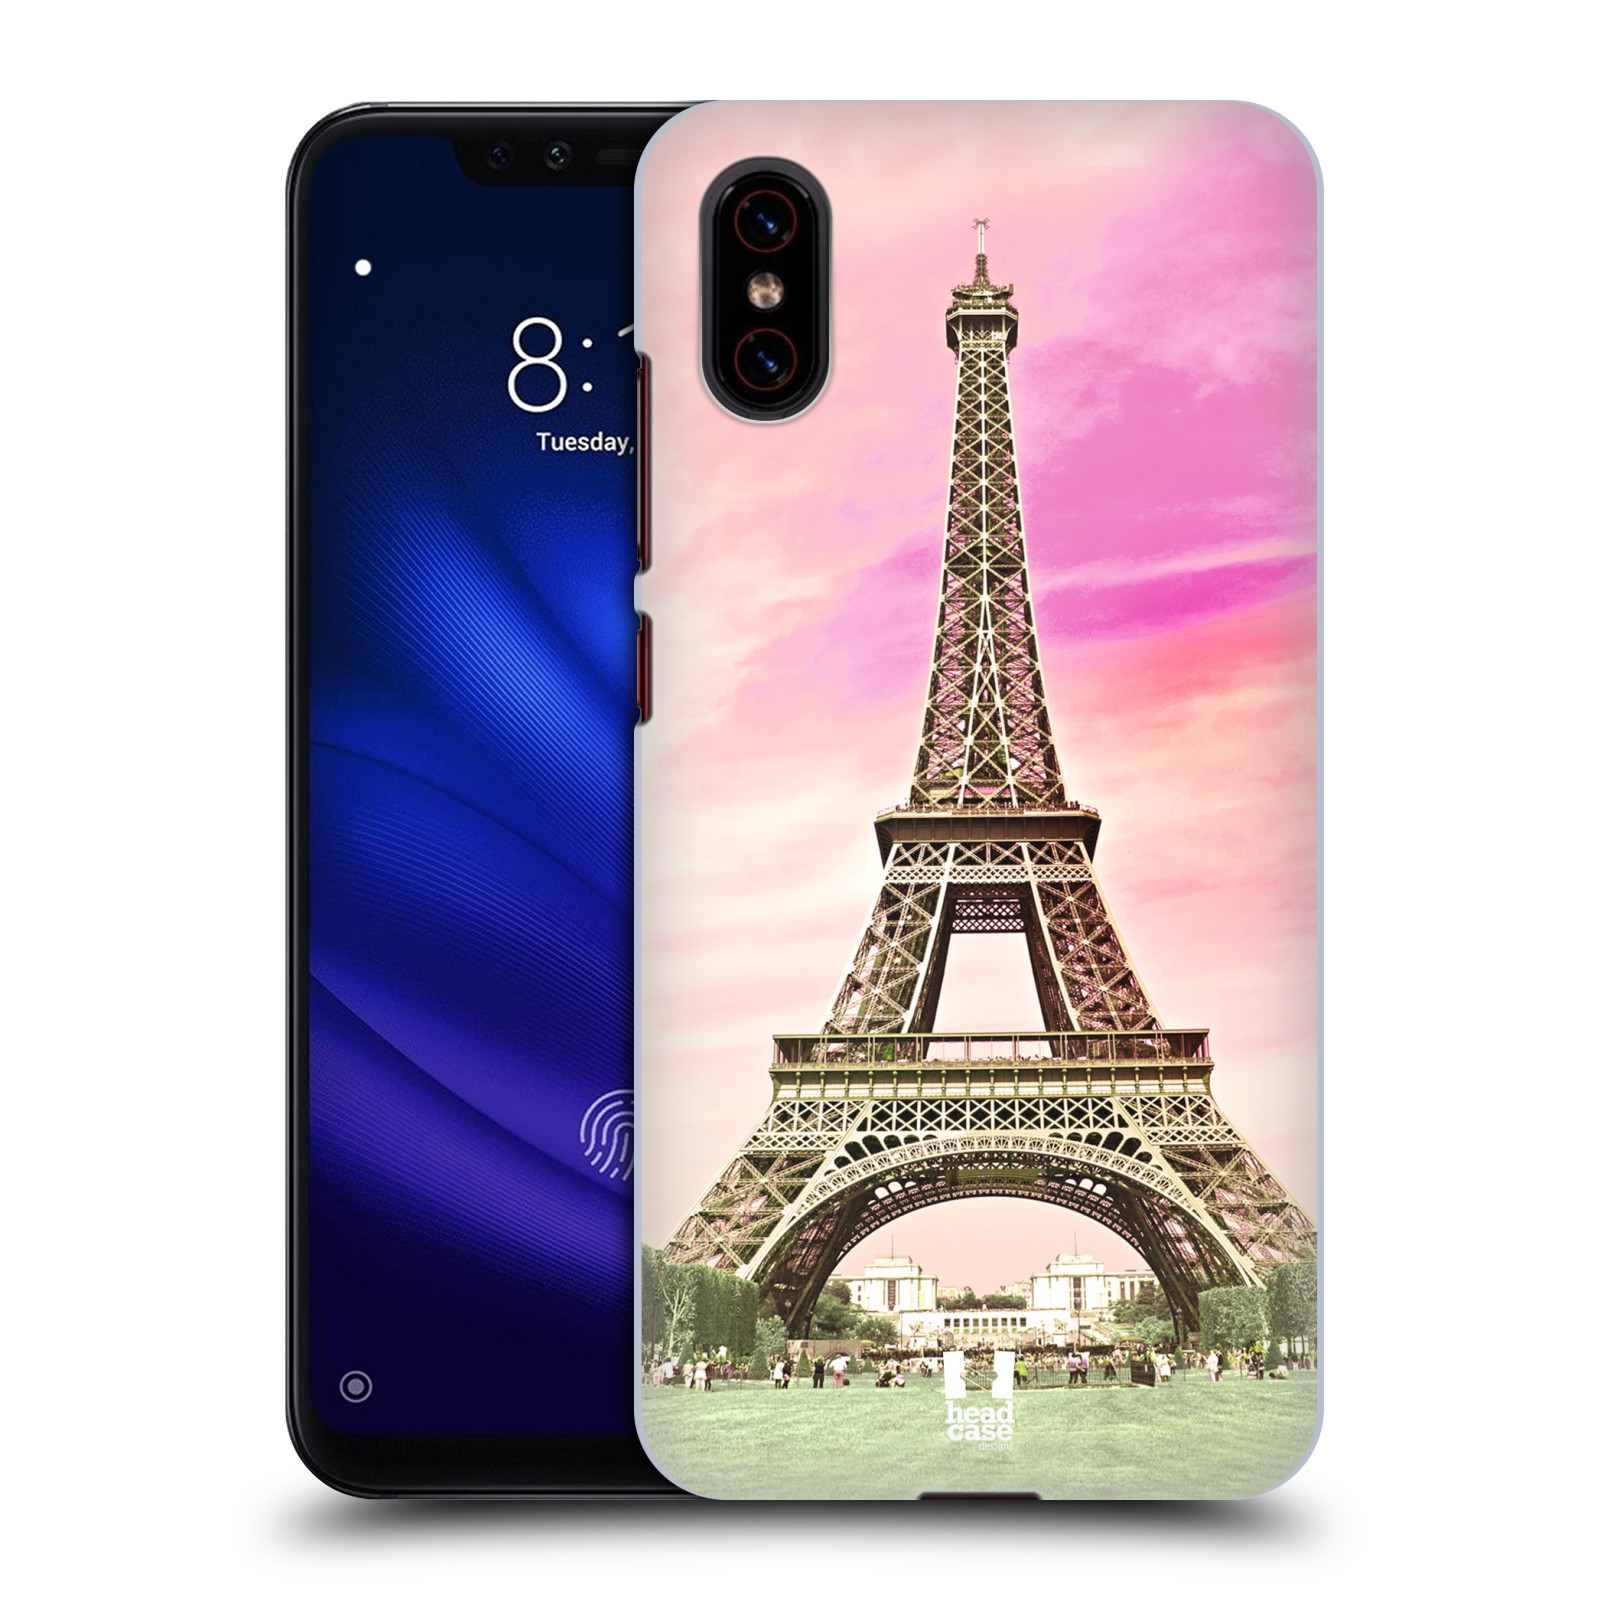 Pouzdro na mobil Xiaomi  Mi 8 PRO - HEAD CASE - historická místa Eiffelova věž Paříž